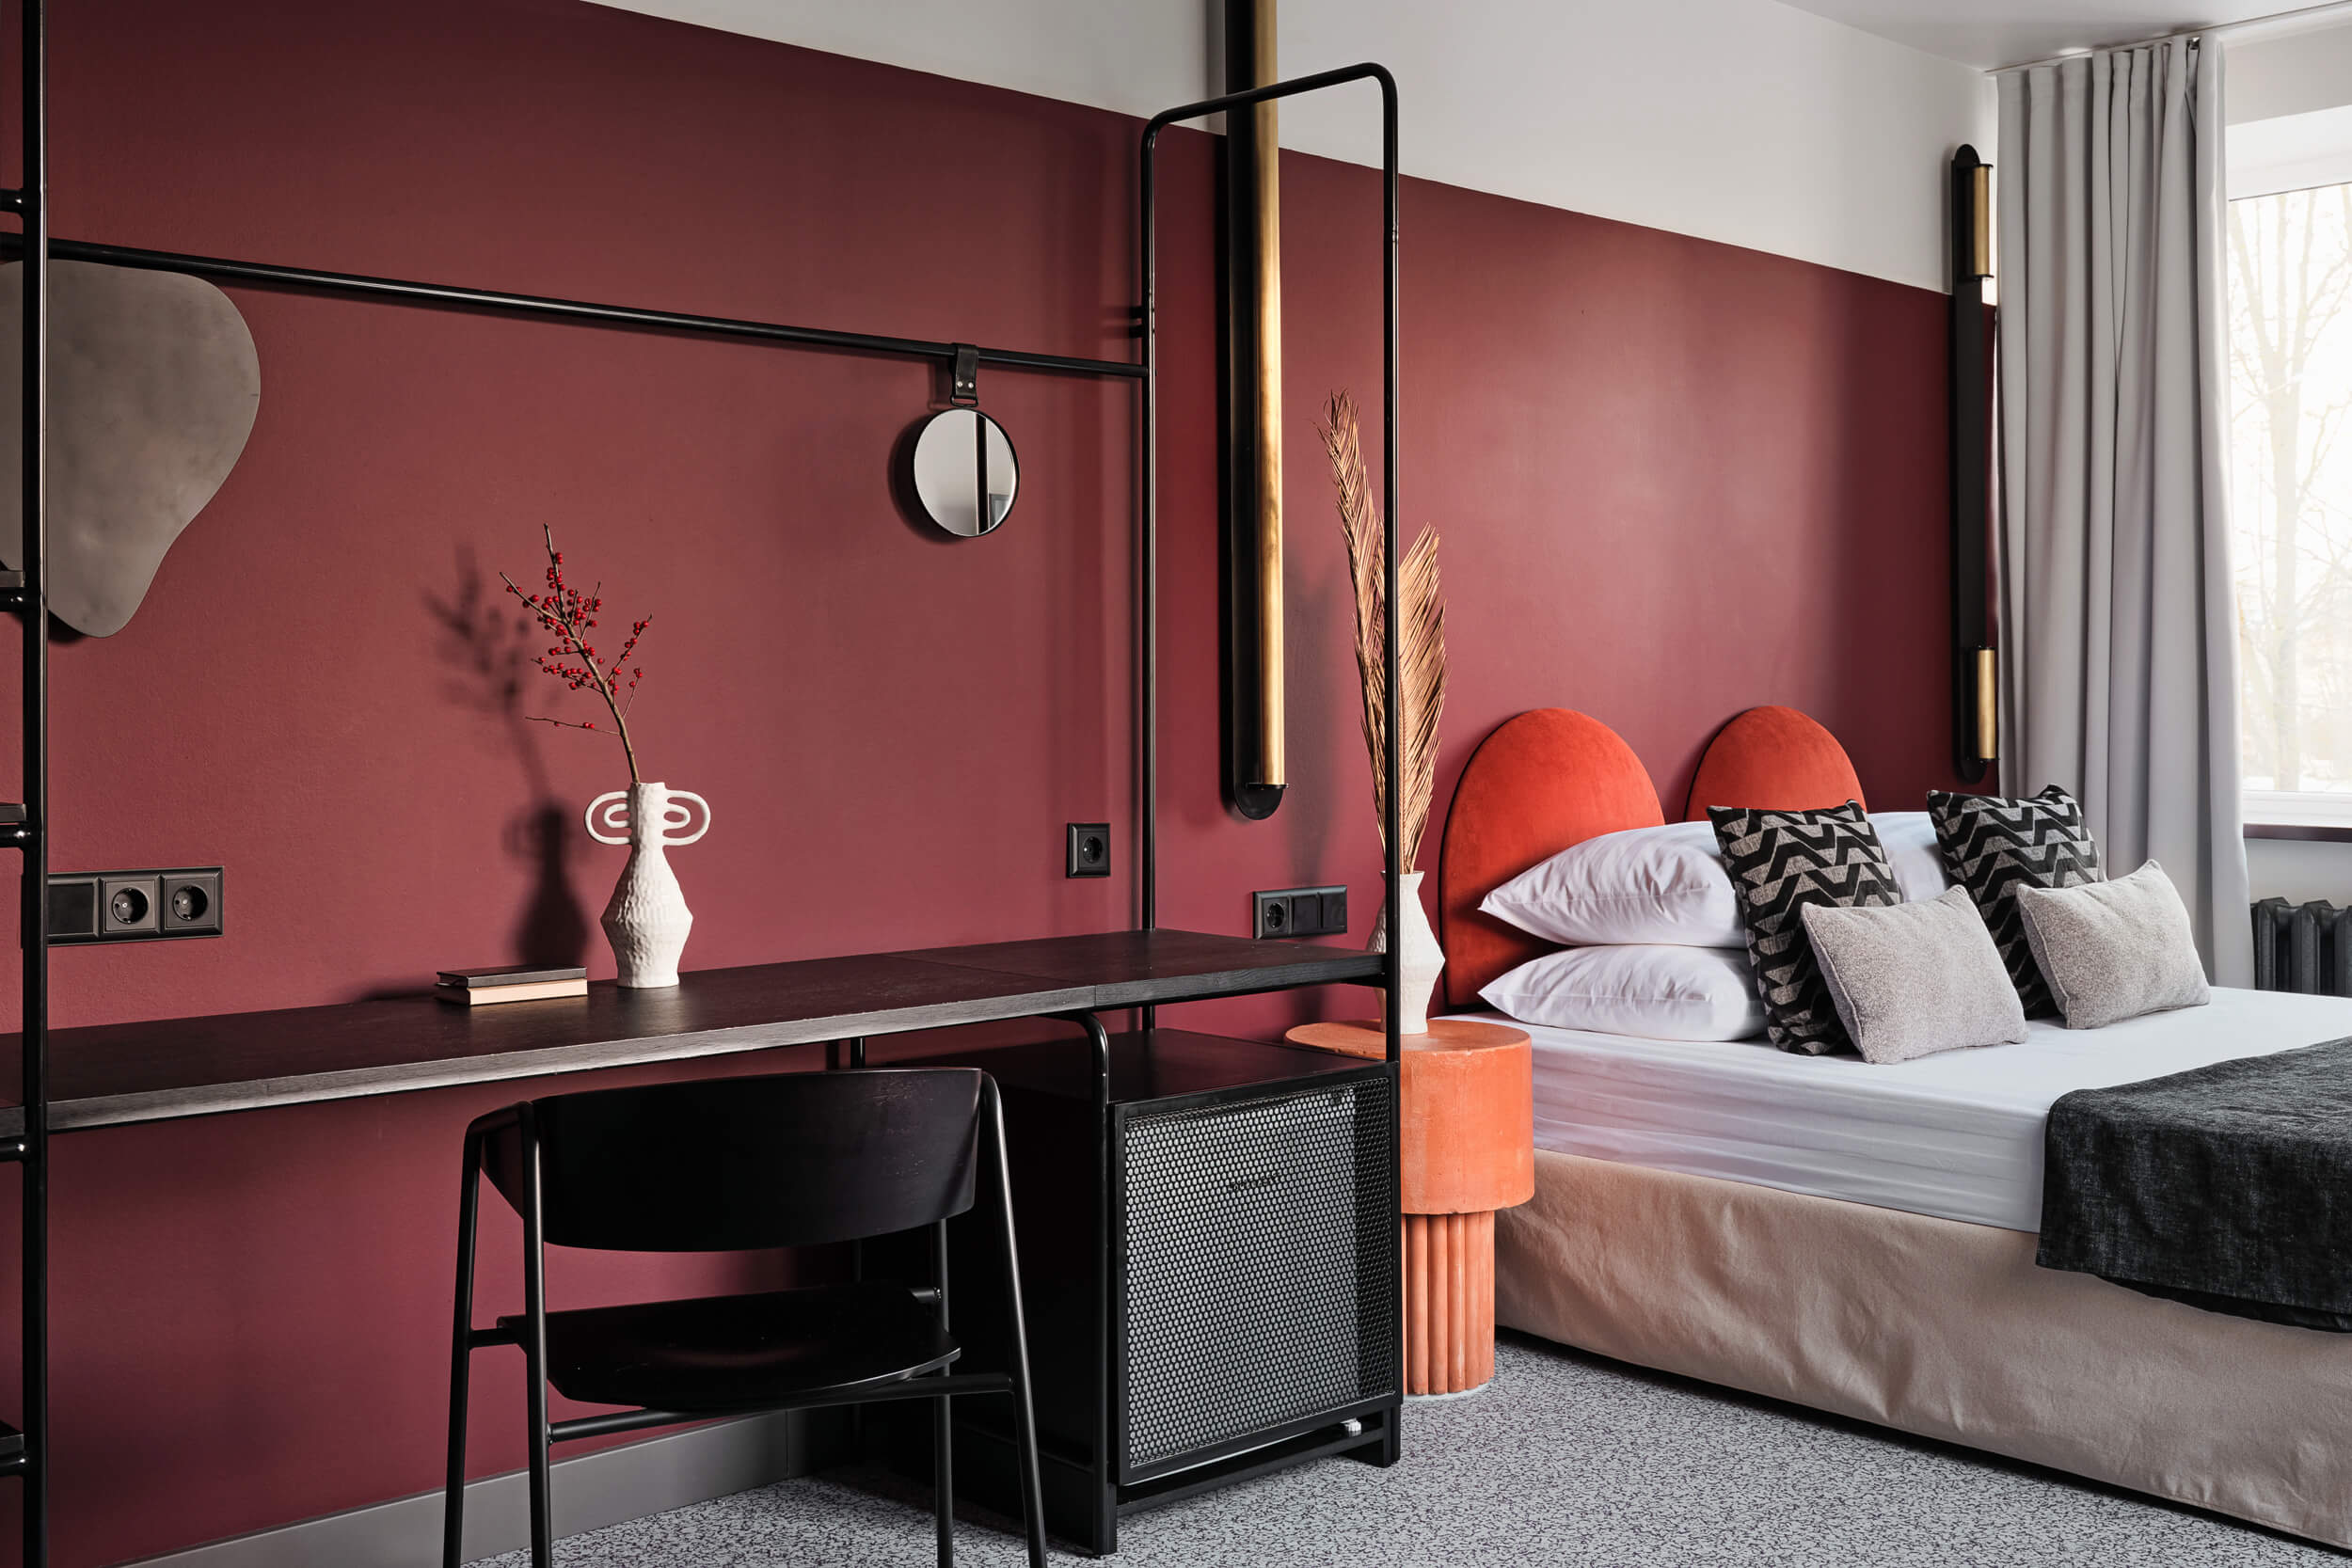 Стена у кровати выкрашена в насыщенный бордовый цвет.